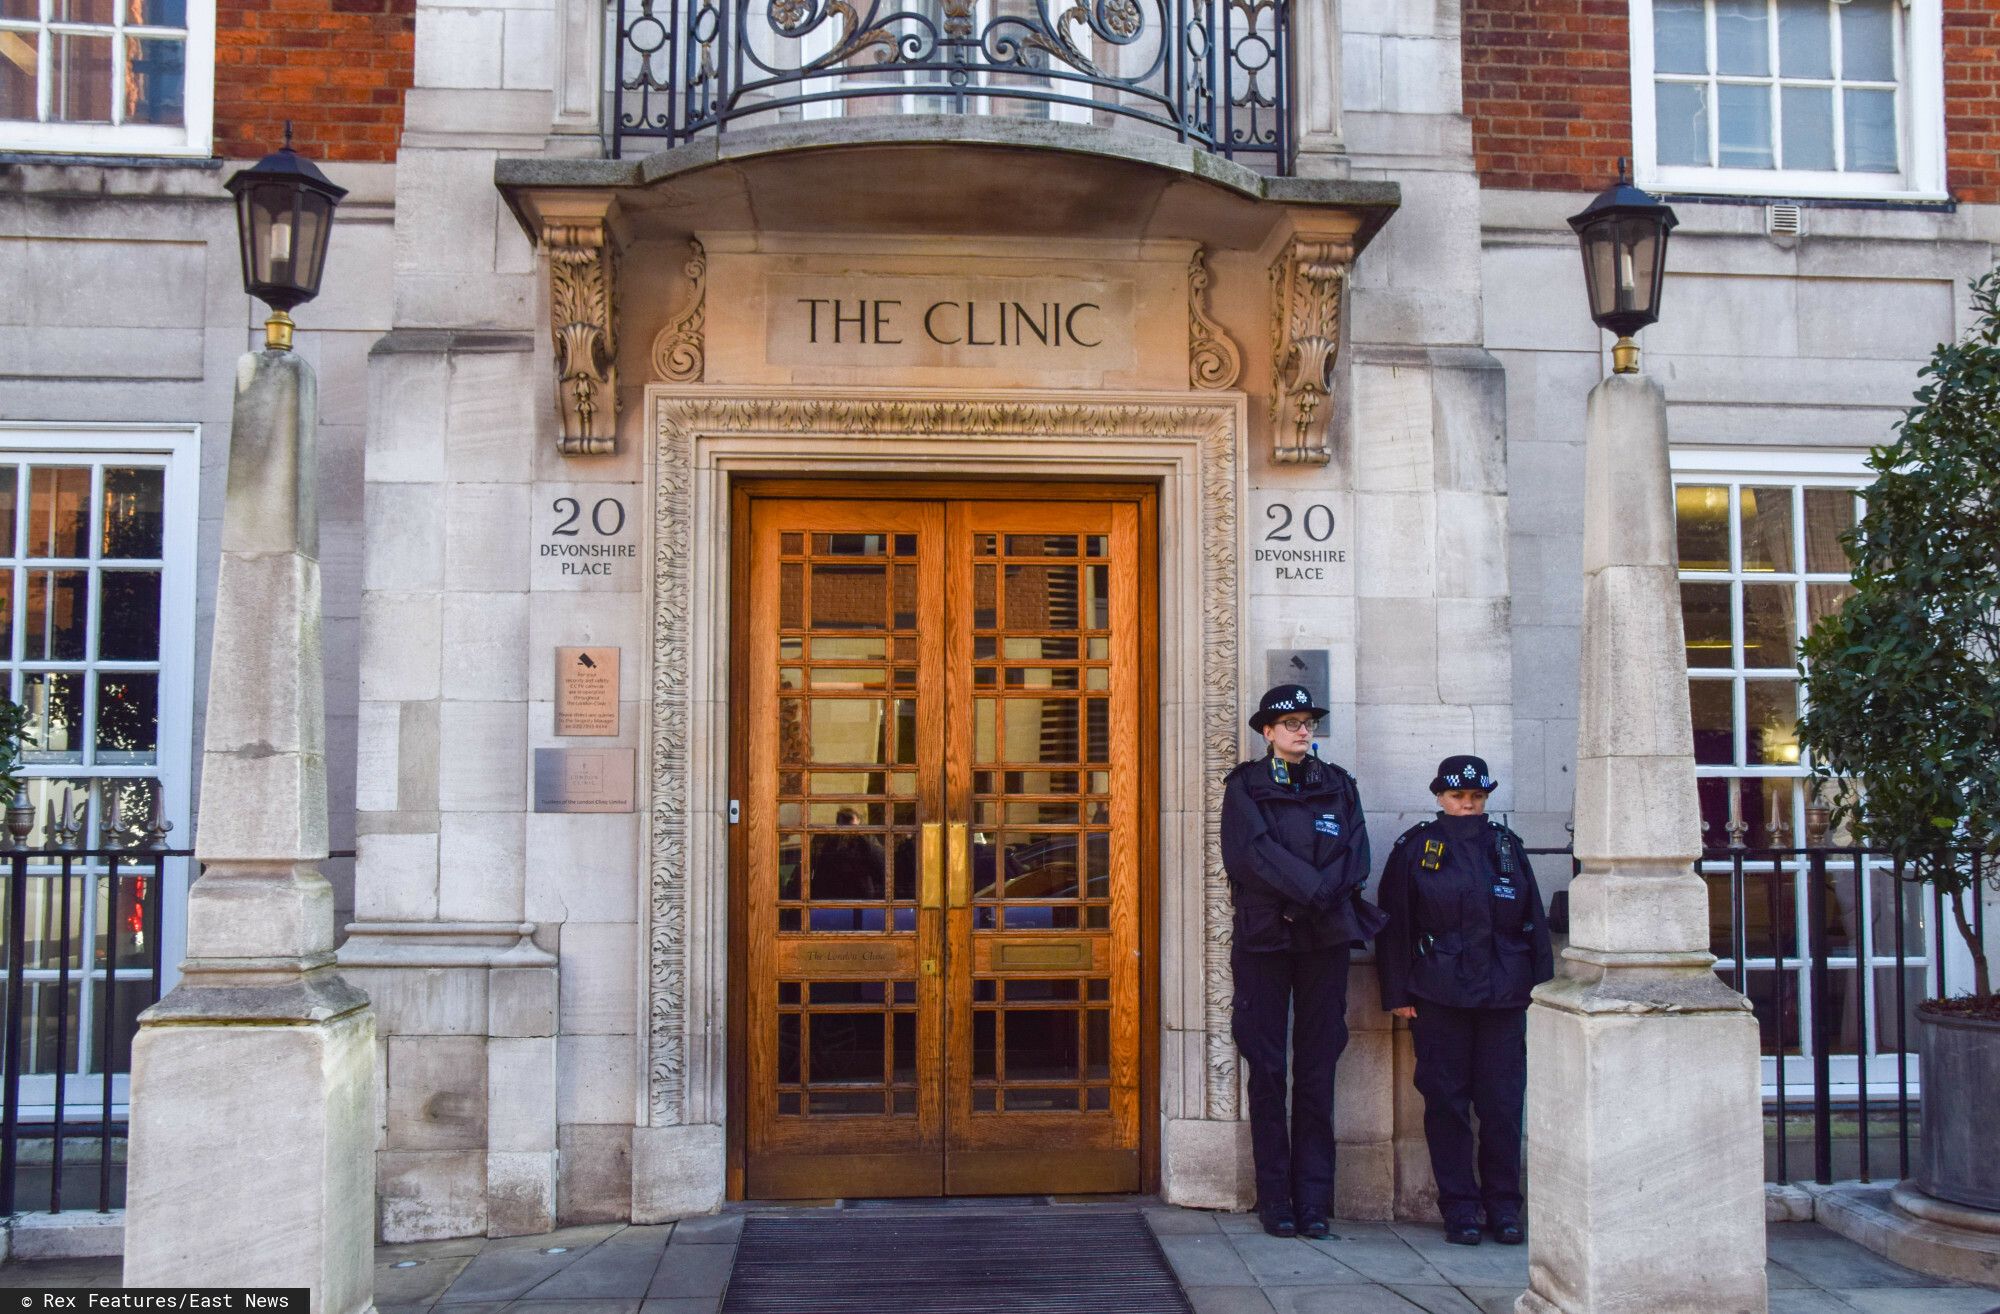 szpital London Clinic, oświadczenie, wyciek danych medycznych księżnej Kate